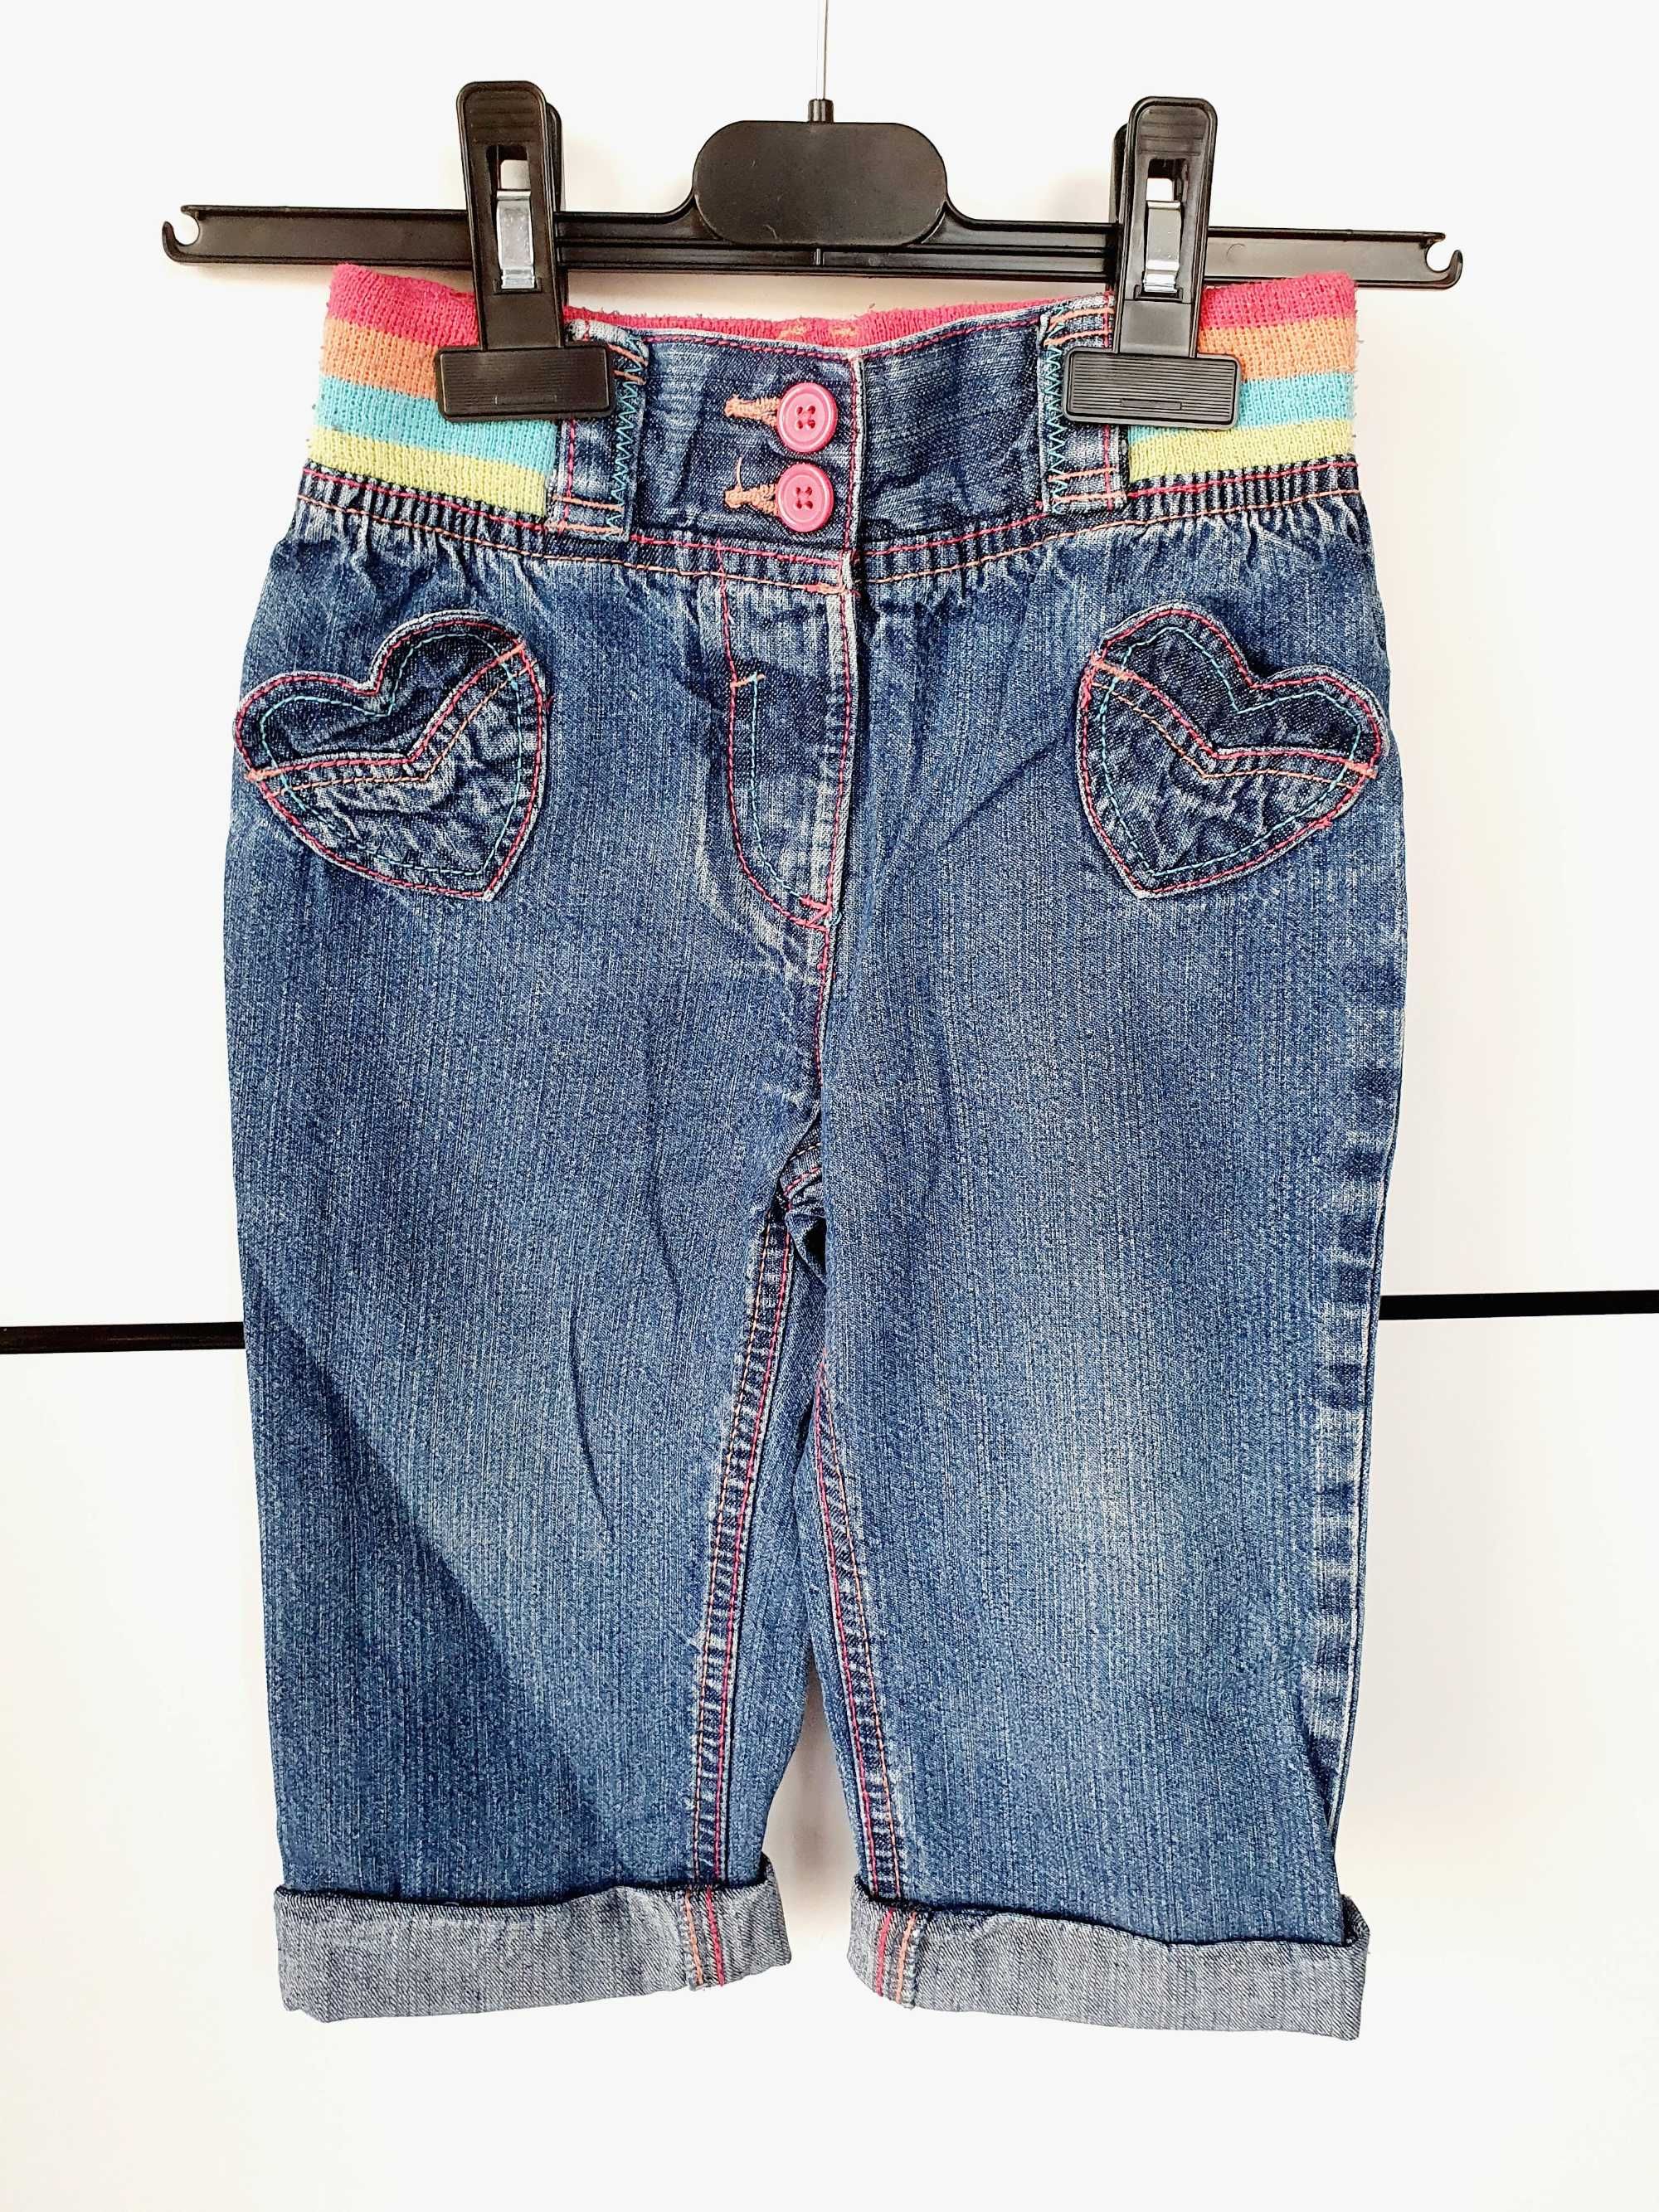 Spodnie jeansowe George 98 cm